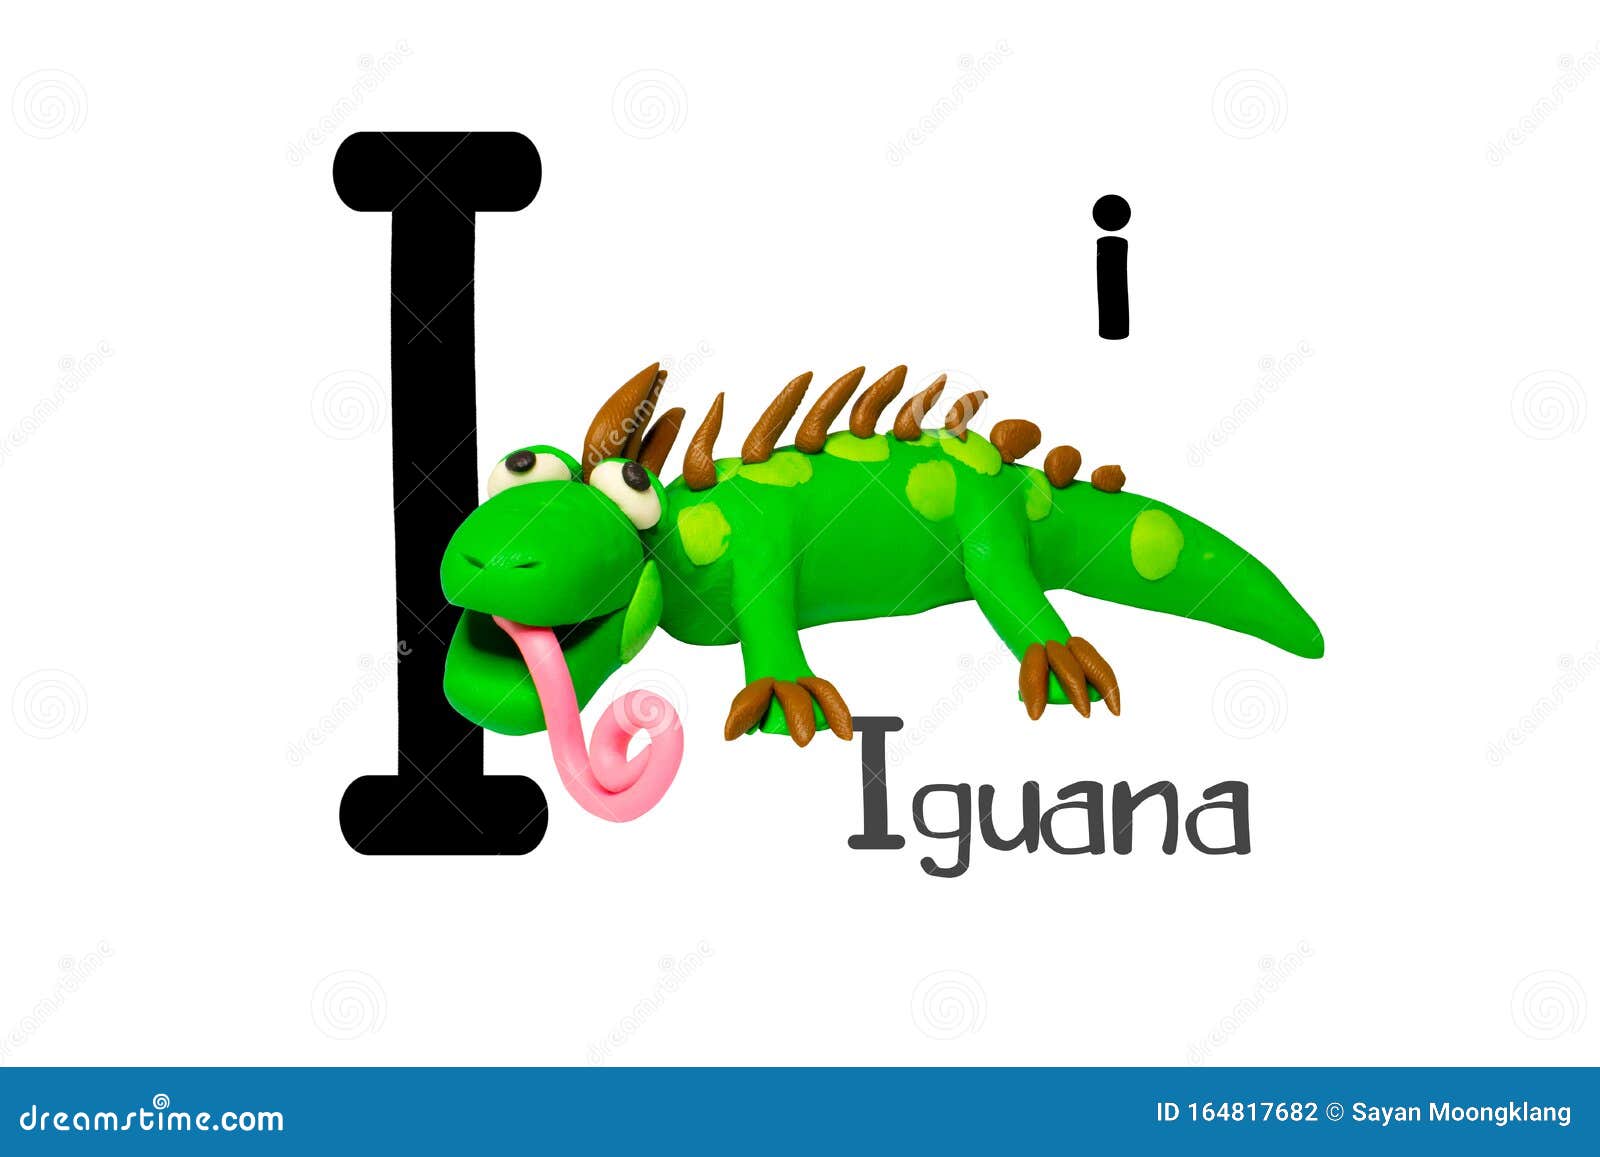 194 Iguana Cartoon Stock Photos - Free & Royalty-Free Stock Photos from  Dreamstime